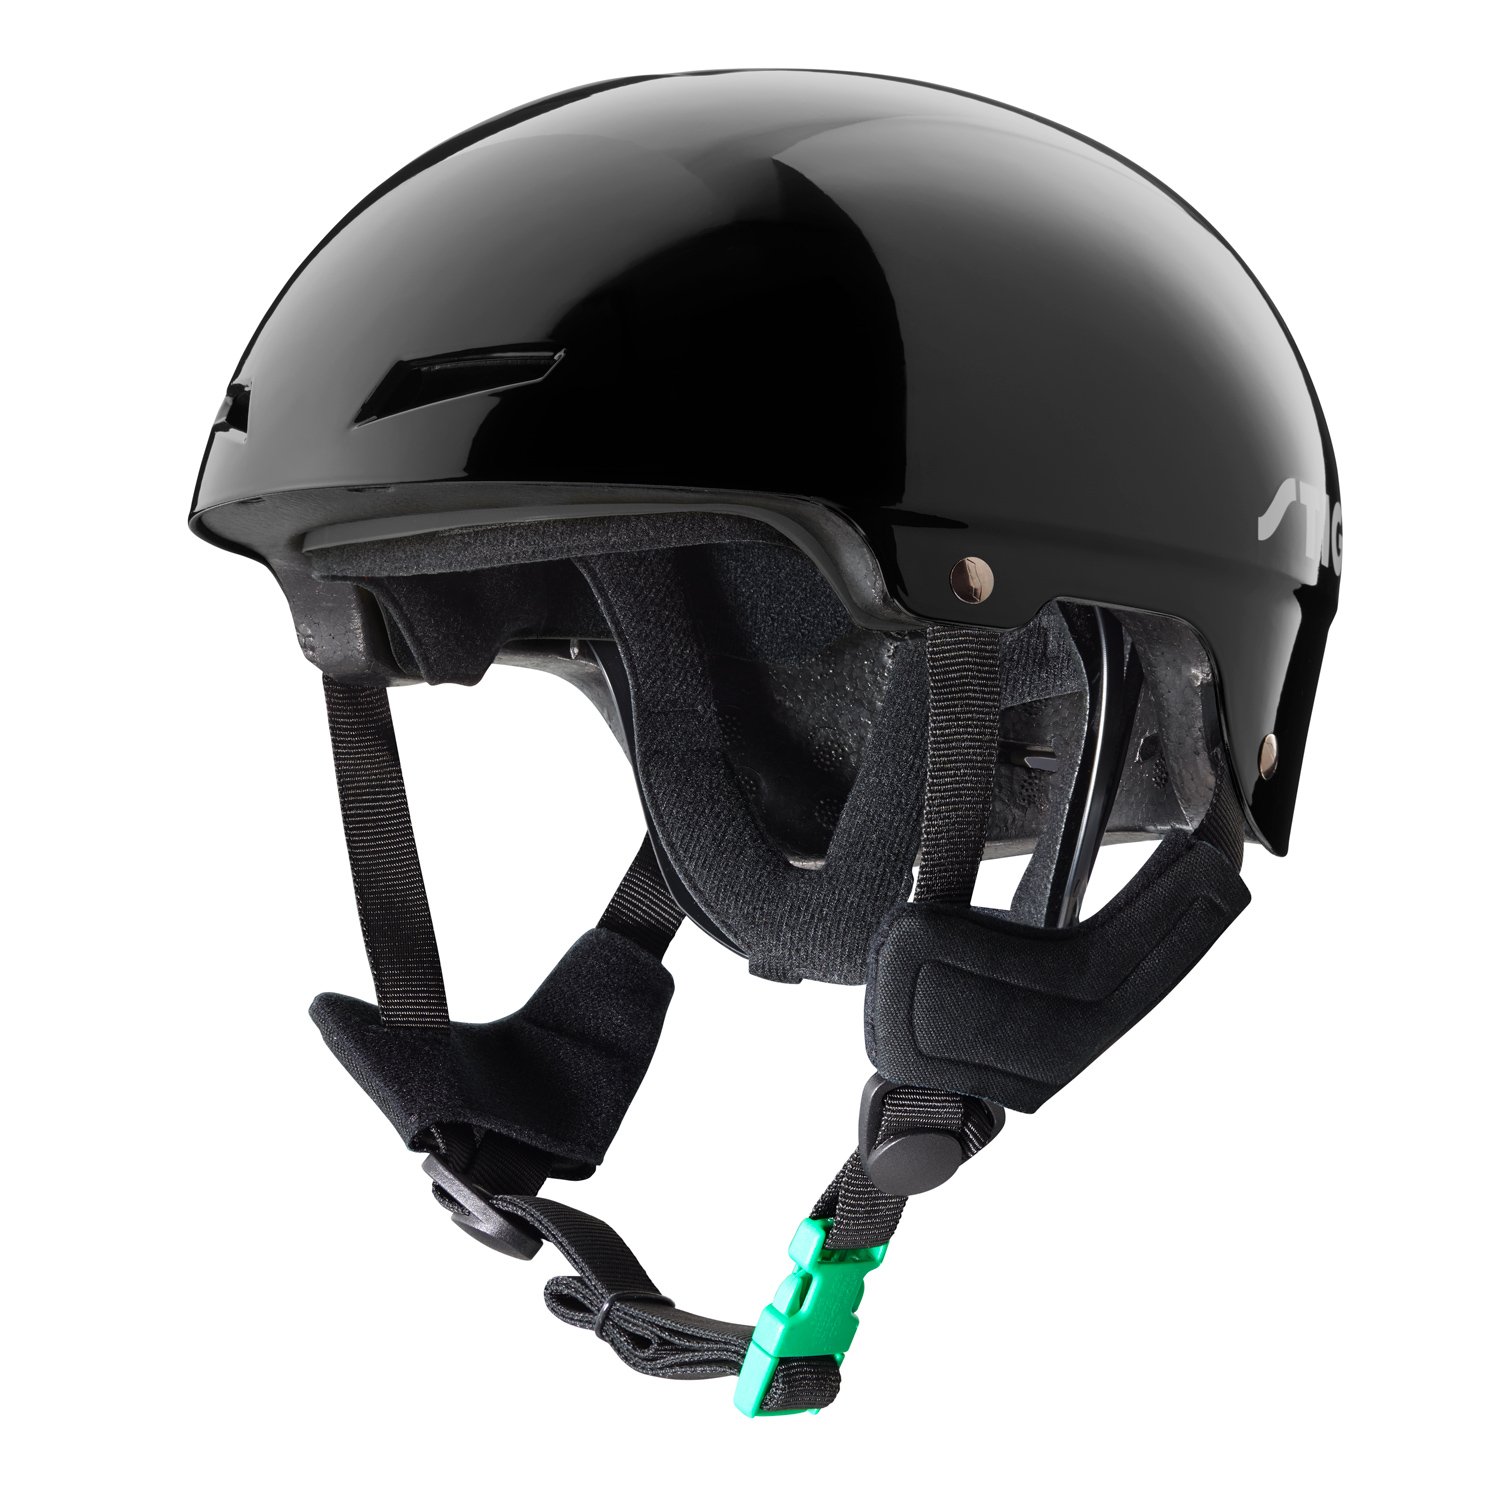 Stiga - Kids Helmet Play - Black S (48-52) (82-5041-04)